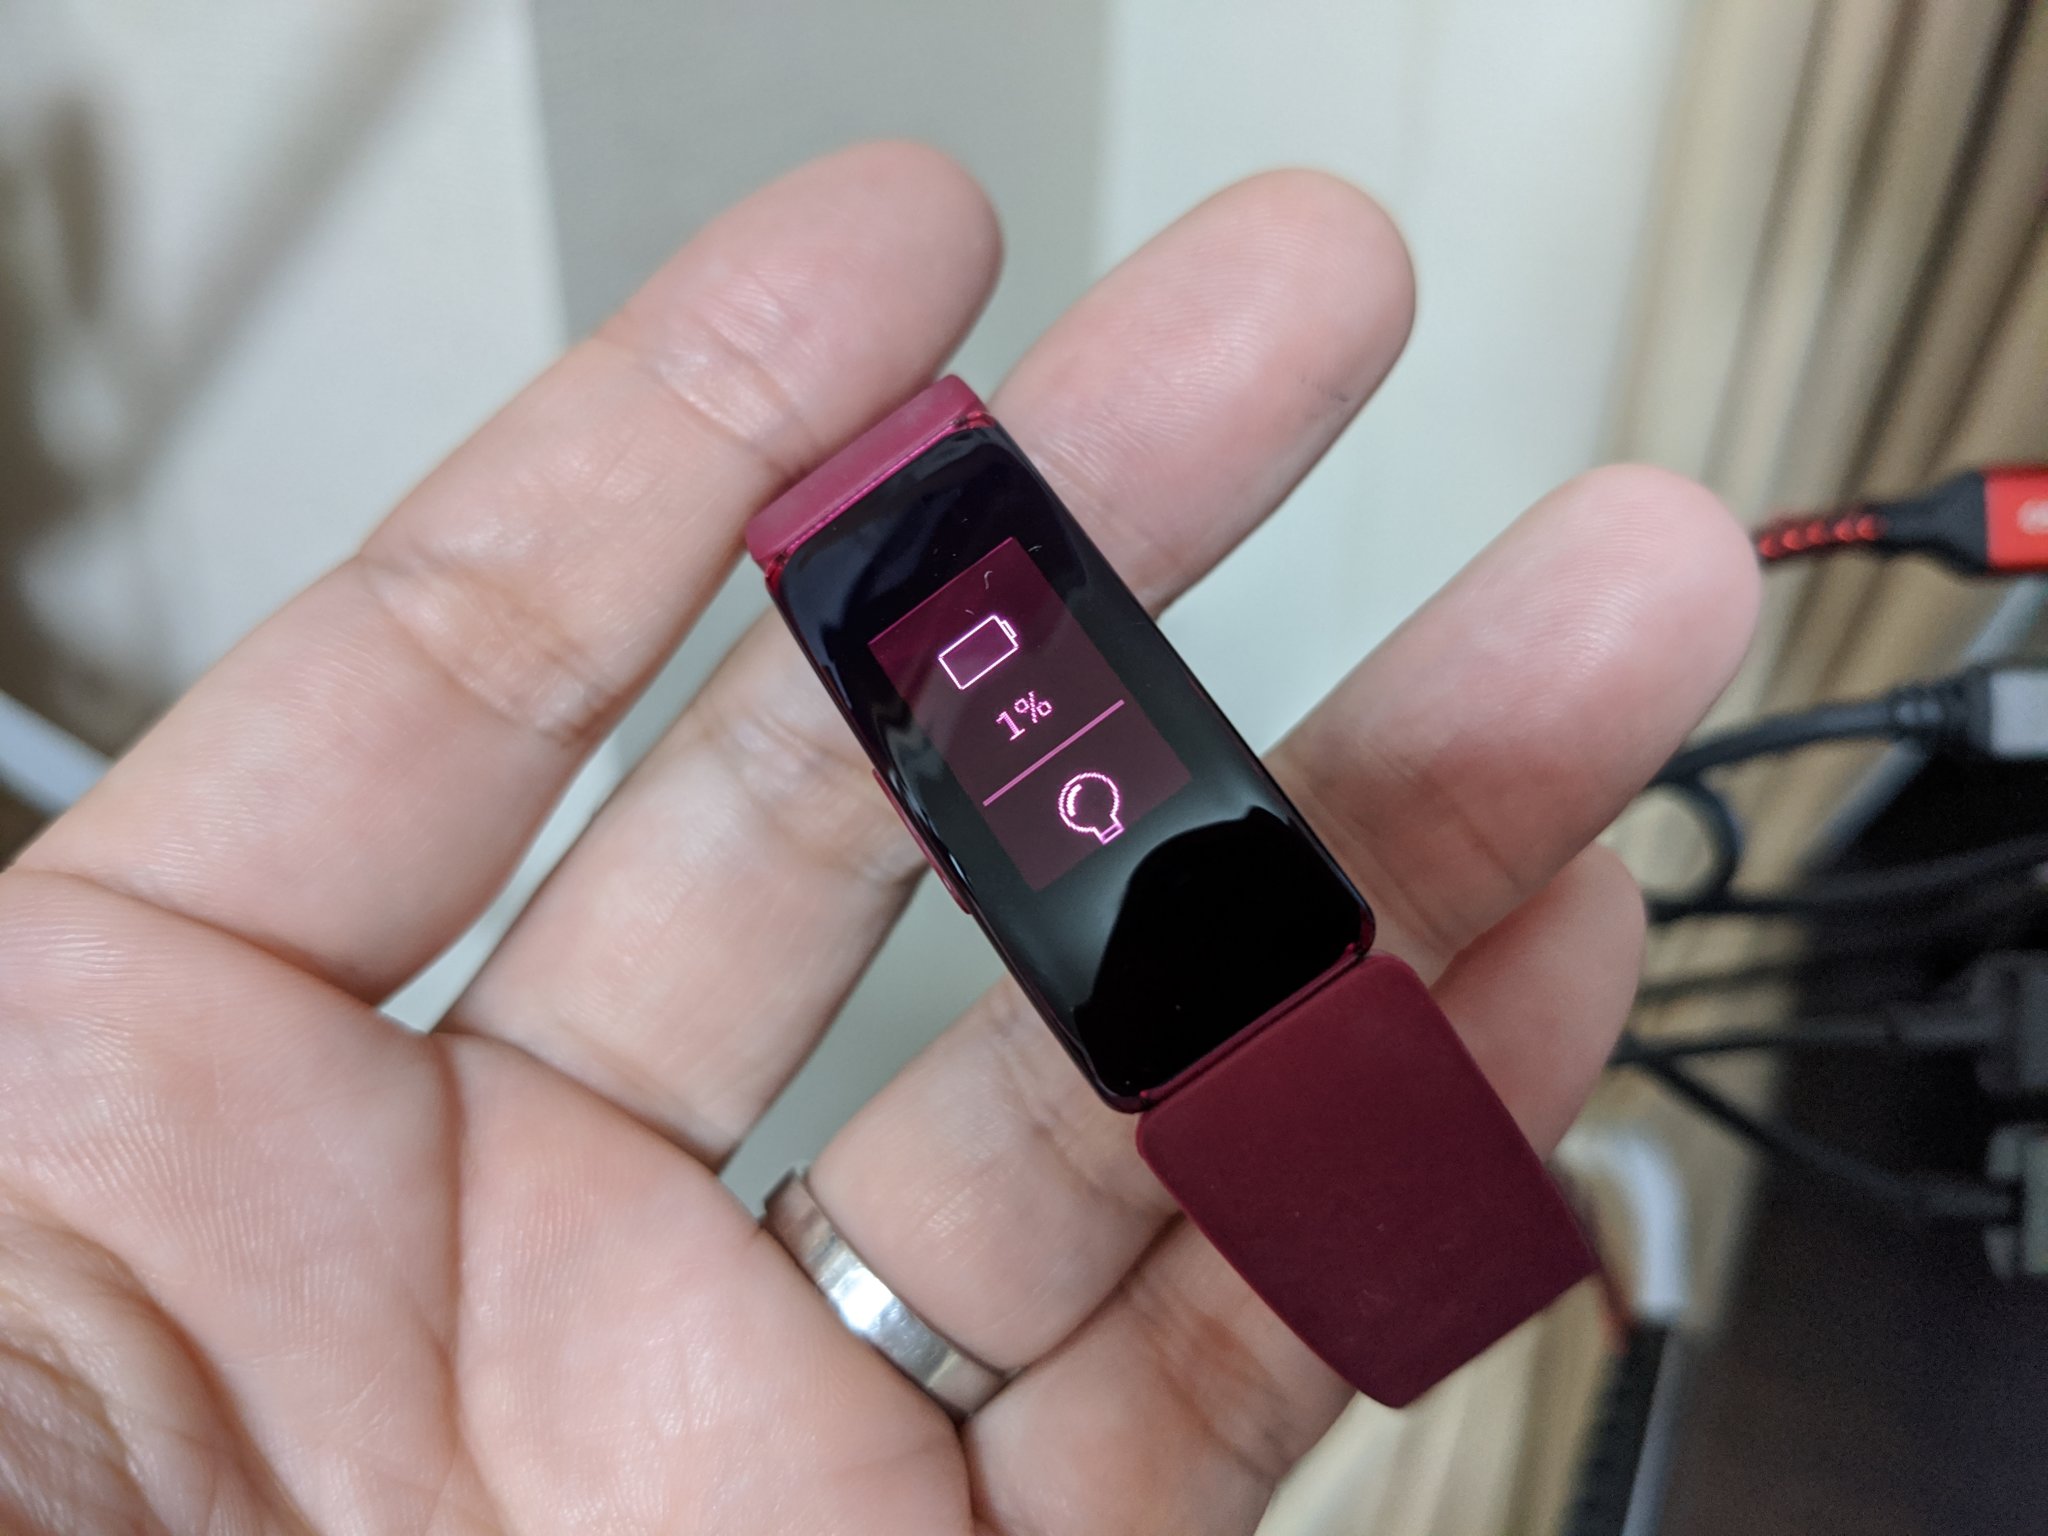 Fitbit Inspireを保証対応で新品に交換してもらった際の手順メモ （電池が充電されない故障） – ガジェットレビュー「2ミニッツ」